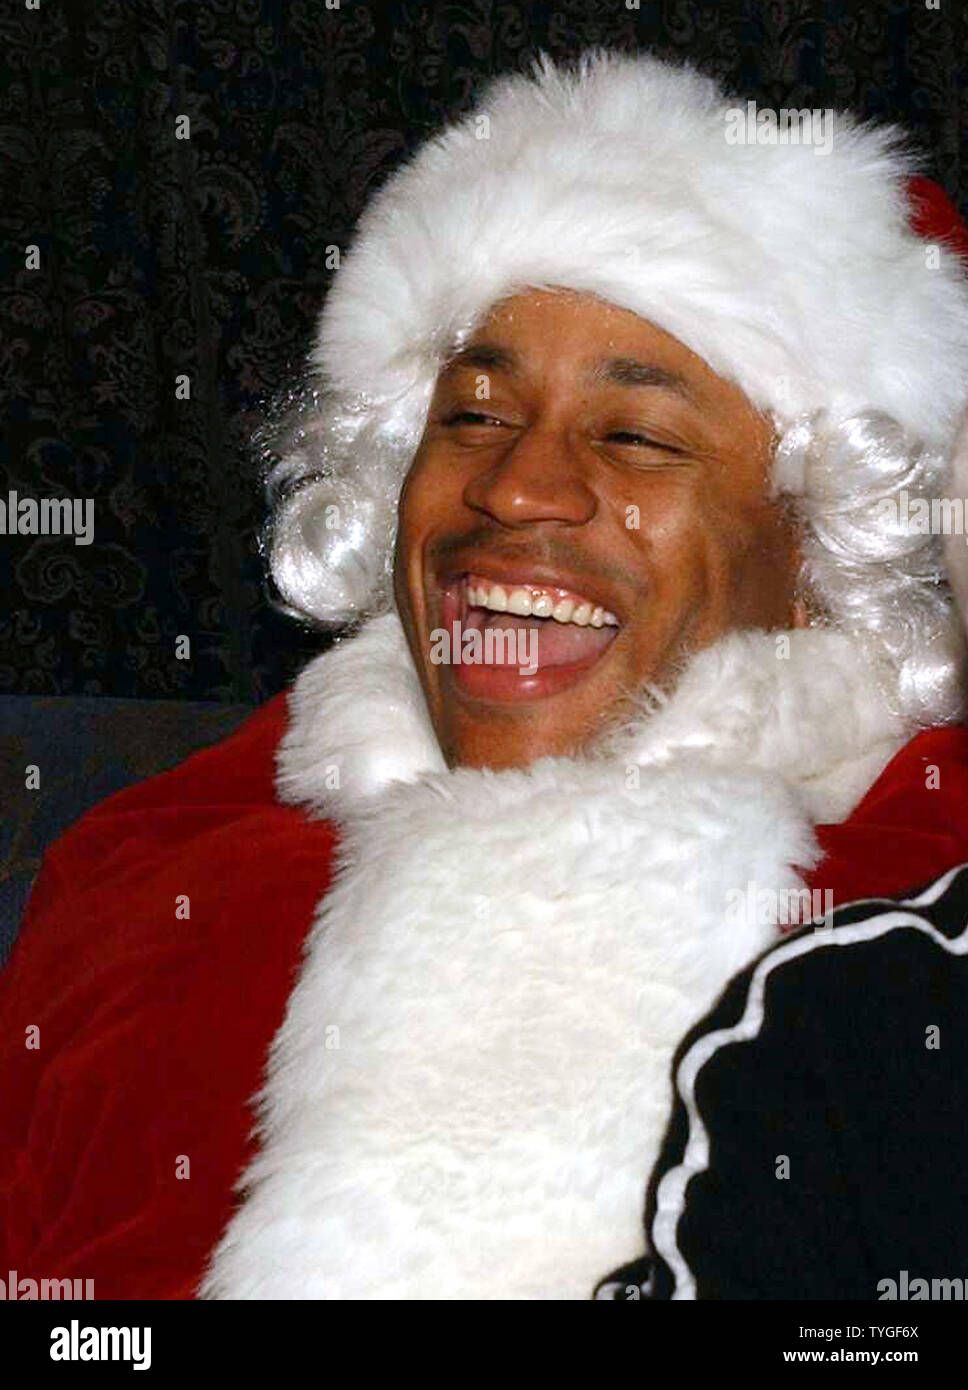 Attore-rapper LL Cool J rilassa dietro le quinte prima di completare la sua Santa Claus trucco al 8 dicembre, 2003 annuale di buttare Sogno festa per gli appartenenti alle categorie svantaggiate di New York City i bambini. (UPI foto/Ezio Petersen) Foto Stock